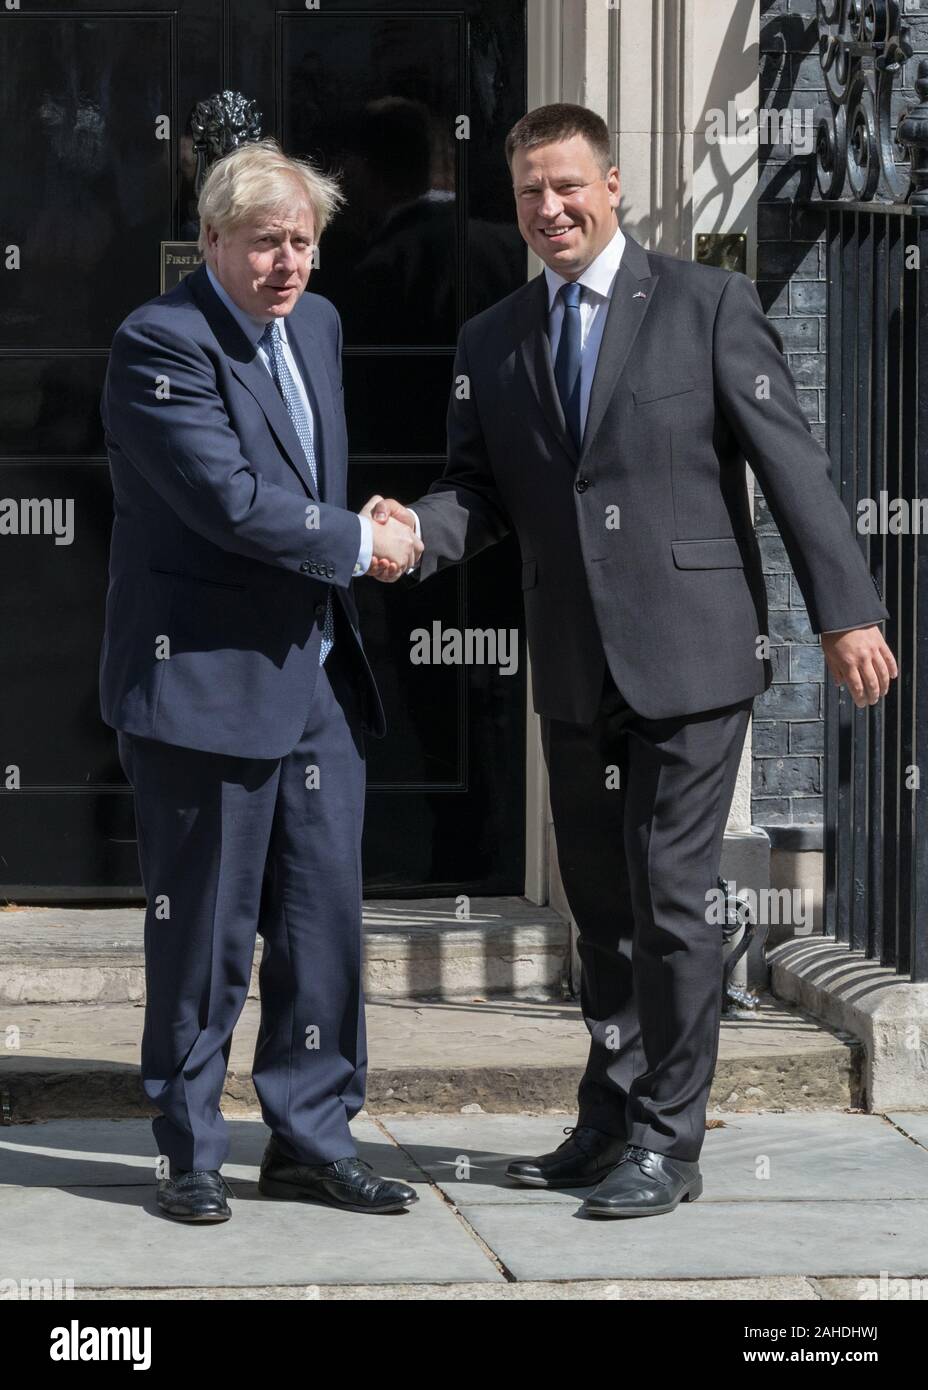 Boris Johnson, le Premier ministre britannique, accueille Jüri Ratas, Premier ministre estonien, à l'extérieur au 10, Downing Street à Londres, Royaume-Uni Banque D'Images